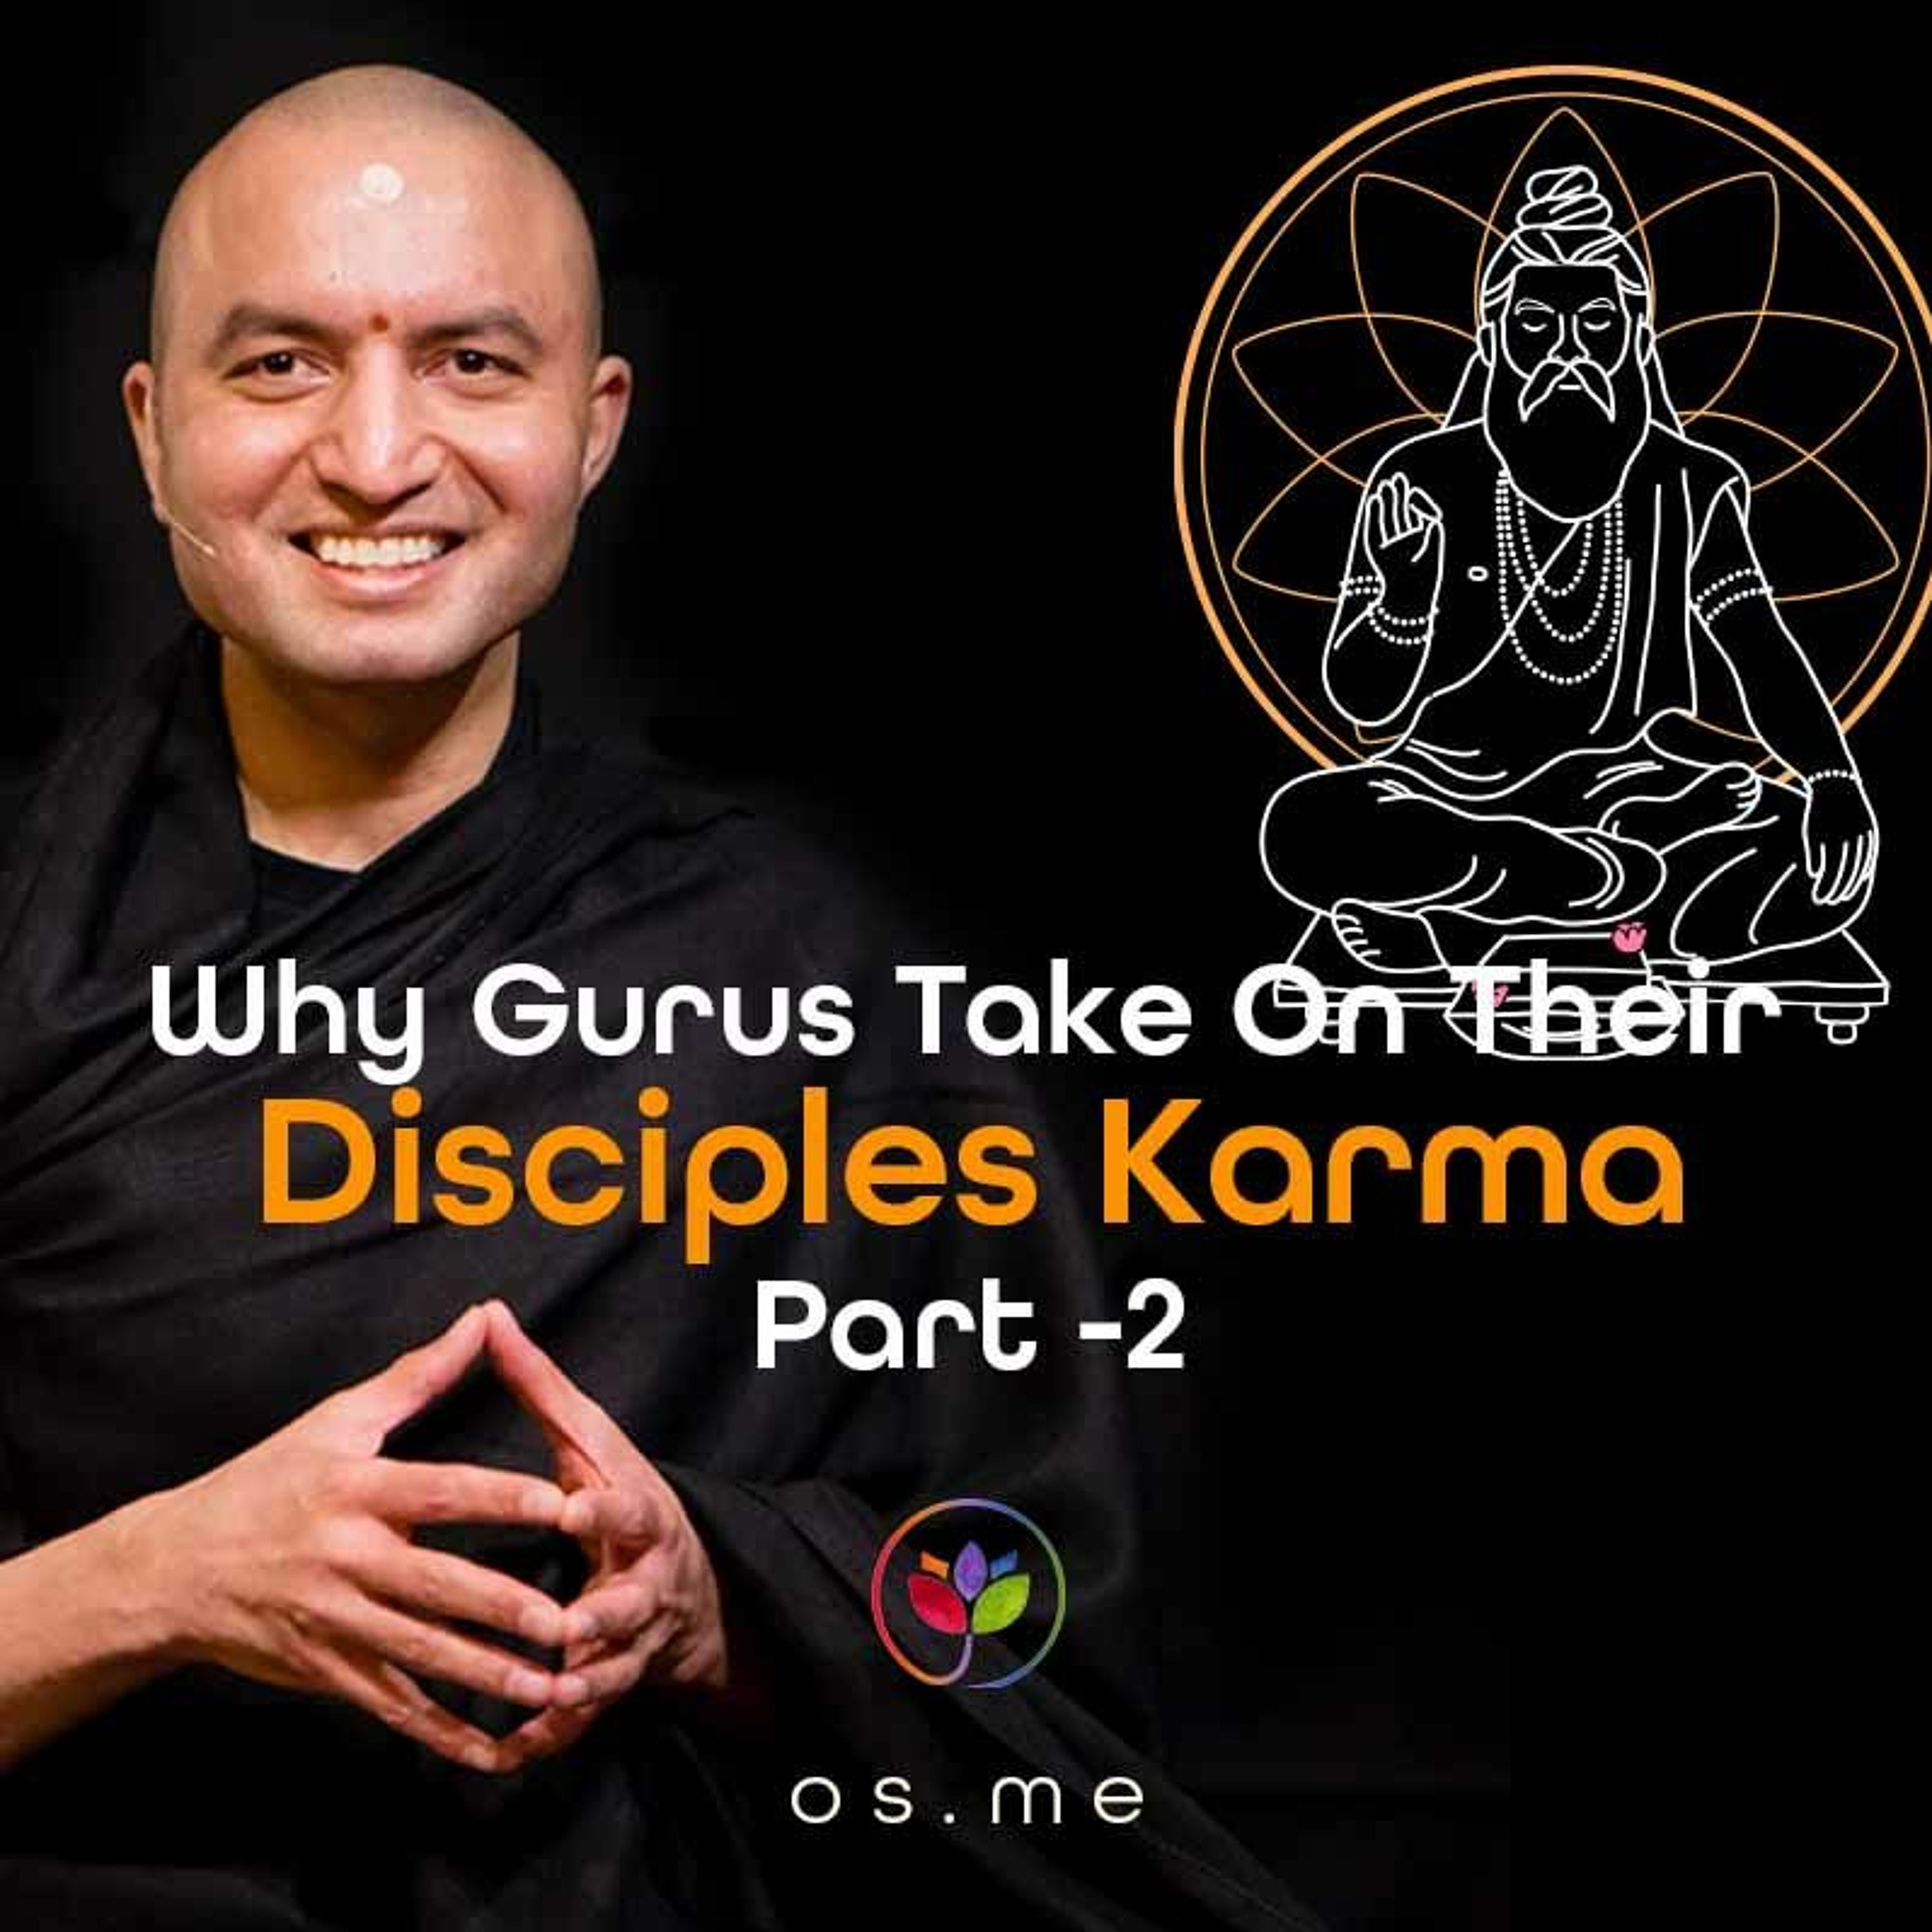 Why Gurus Take on Their Disciples’ Karma Part 2 - [Hindi ]